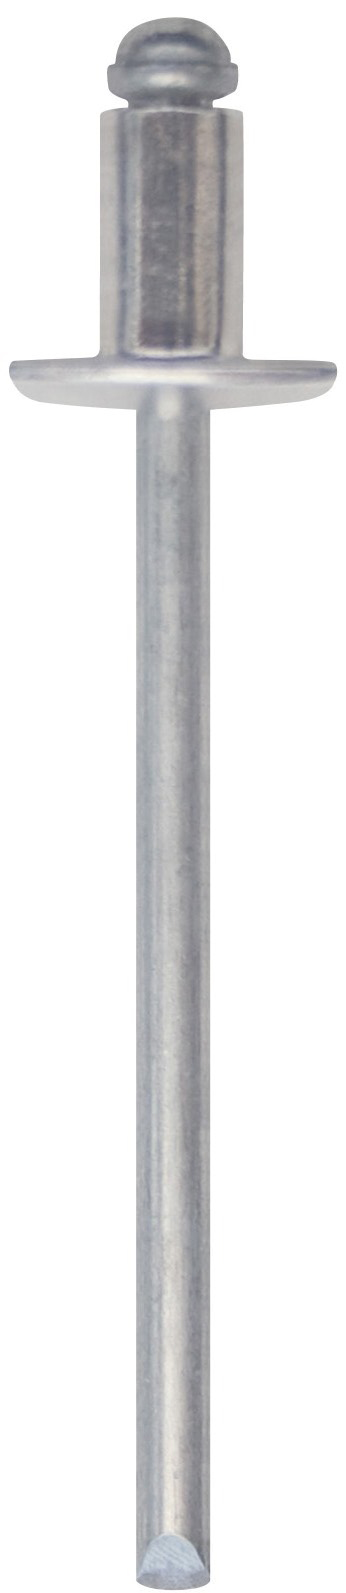 Cod. 0300004805000 - RIVEX Rivetto in alluminio